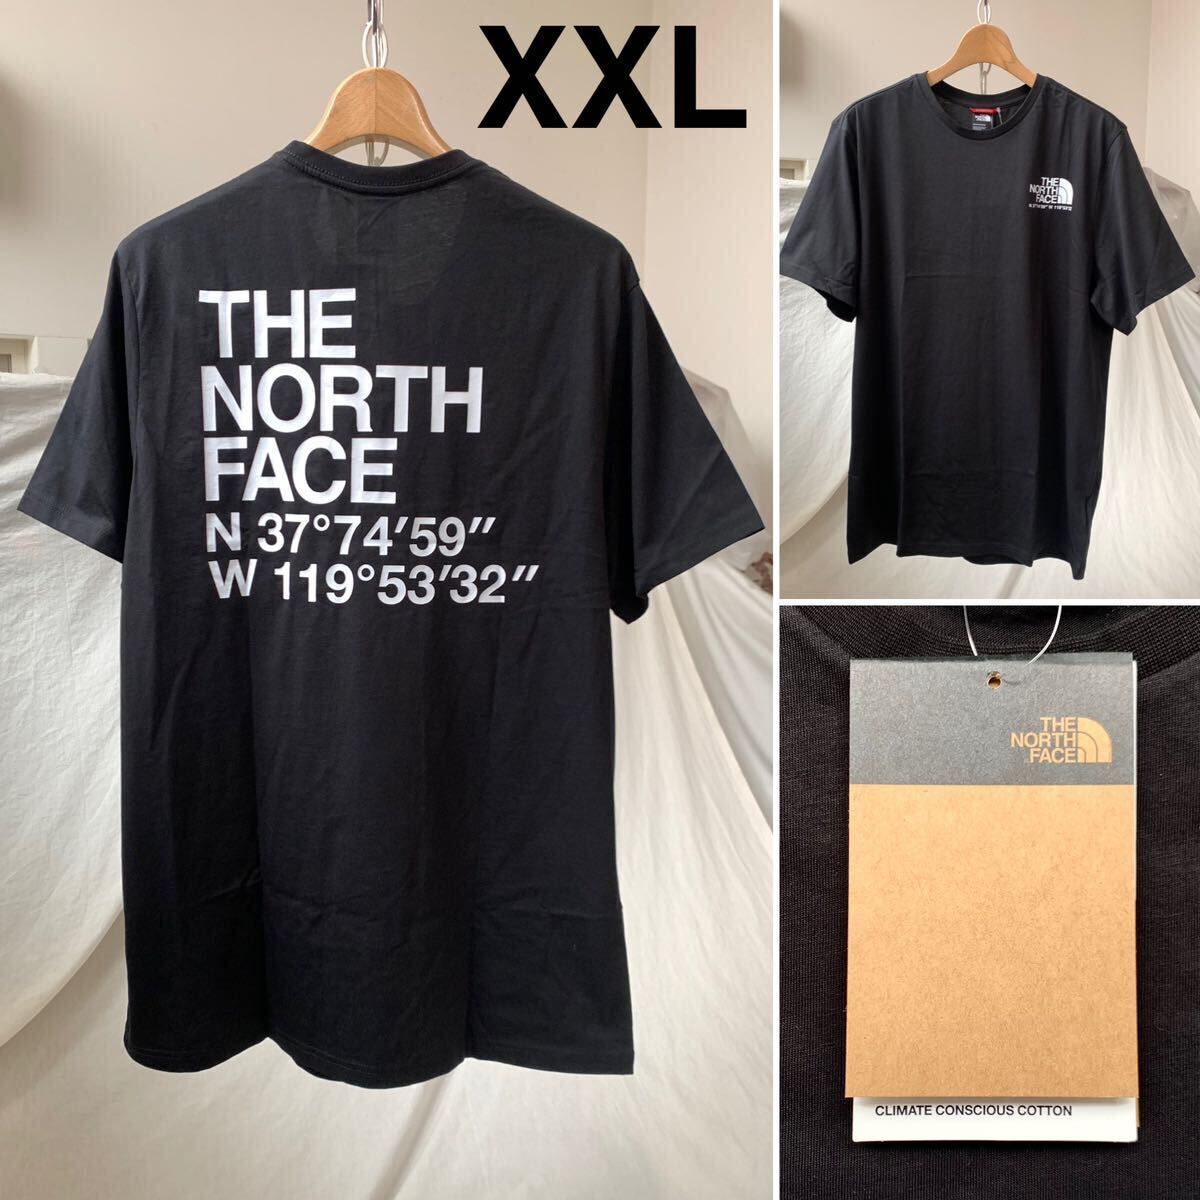 XXL 新品 ノースフェイス THE NORTH FACE COORDINATES TEE ロゴ ハーフドーム 座標 半袖 Tシャツ 黒 メンズ 海外企画 日本未入荷 送料無料の画像1